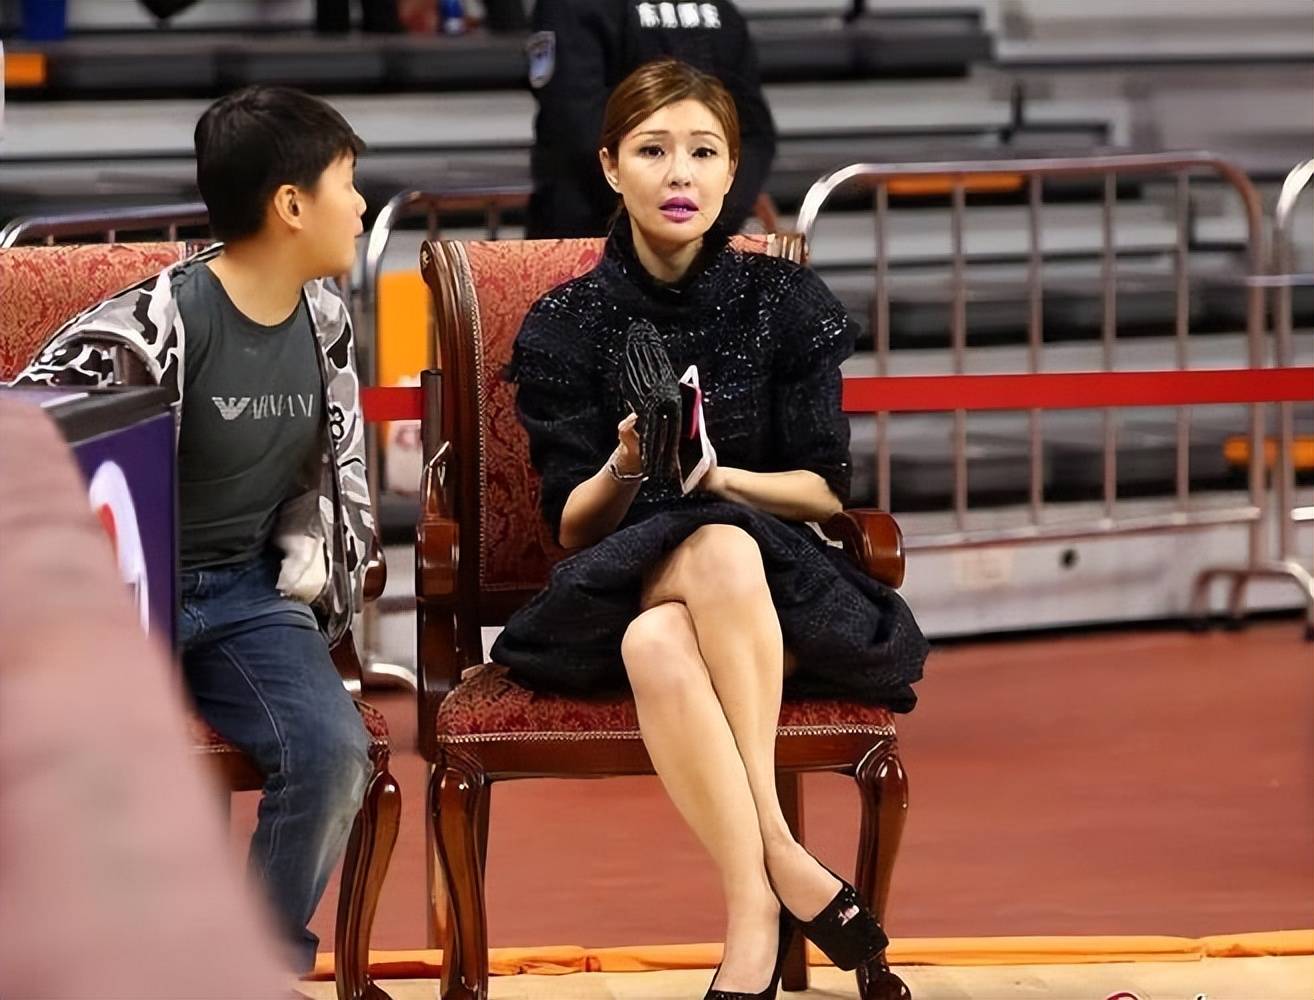 总之,广东宏远篮球俱乐部老板娘吴迪在中国香港参加体育文化合作签约